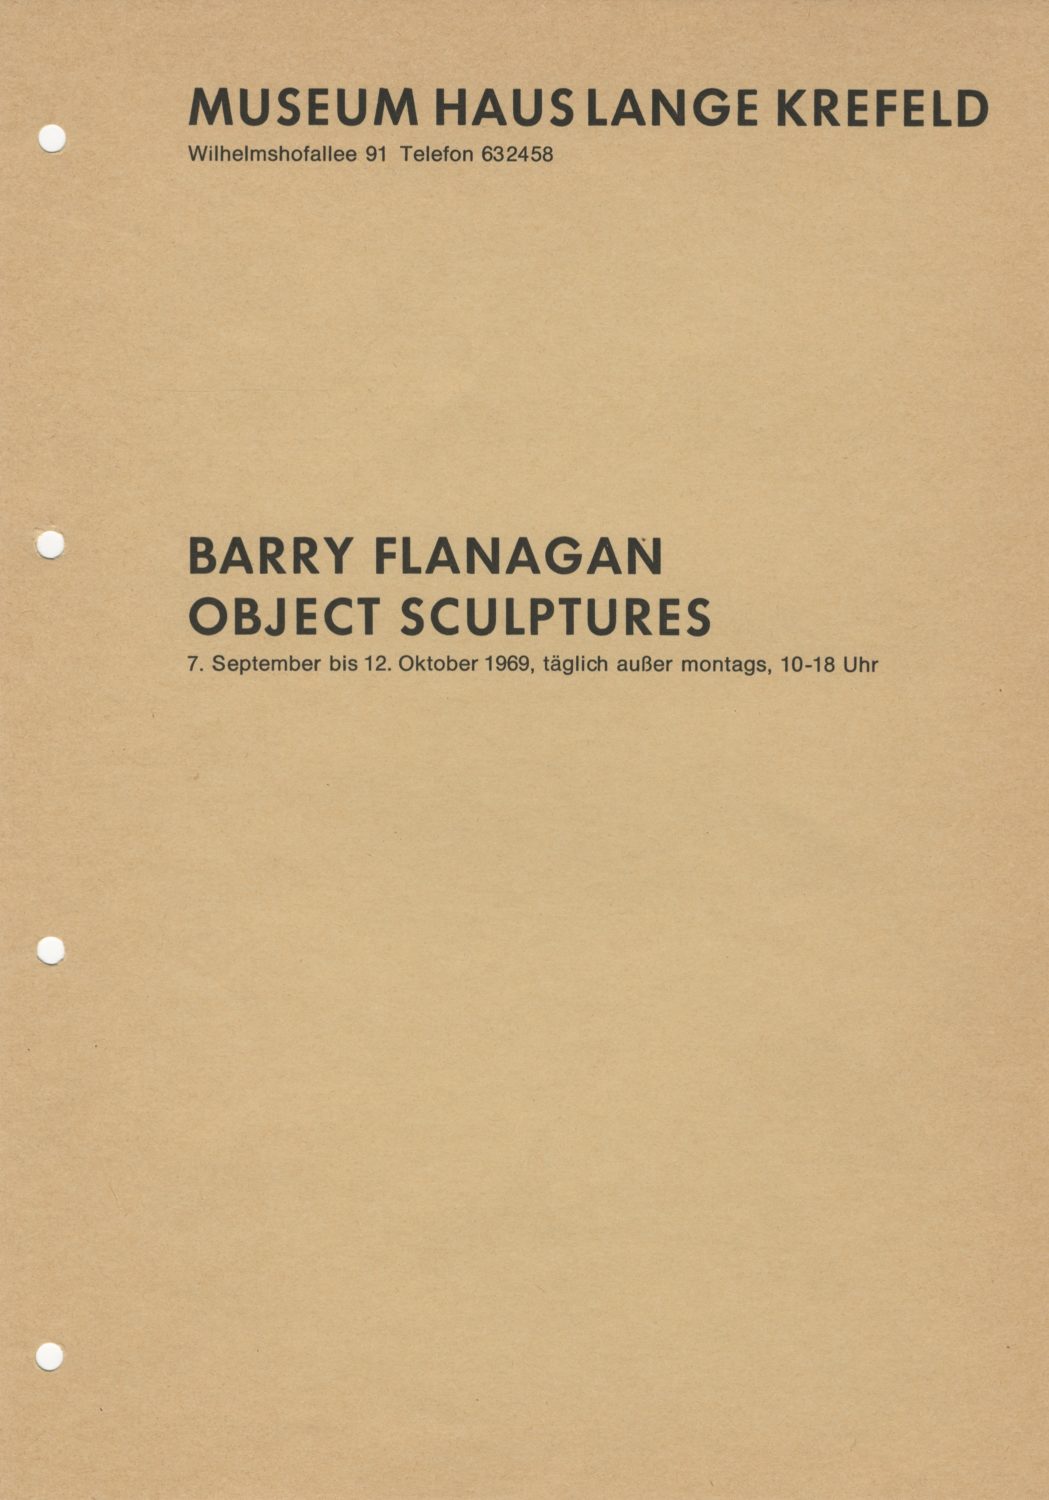 Barry Flanagan: Object Sculptures